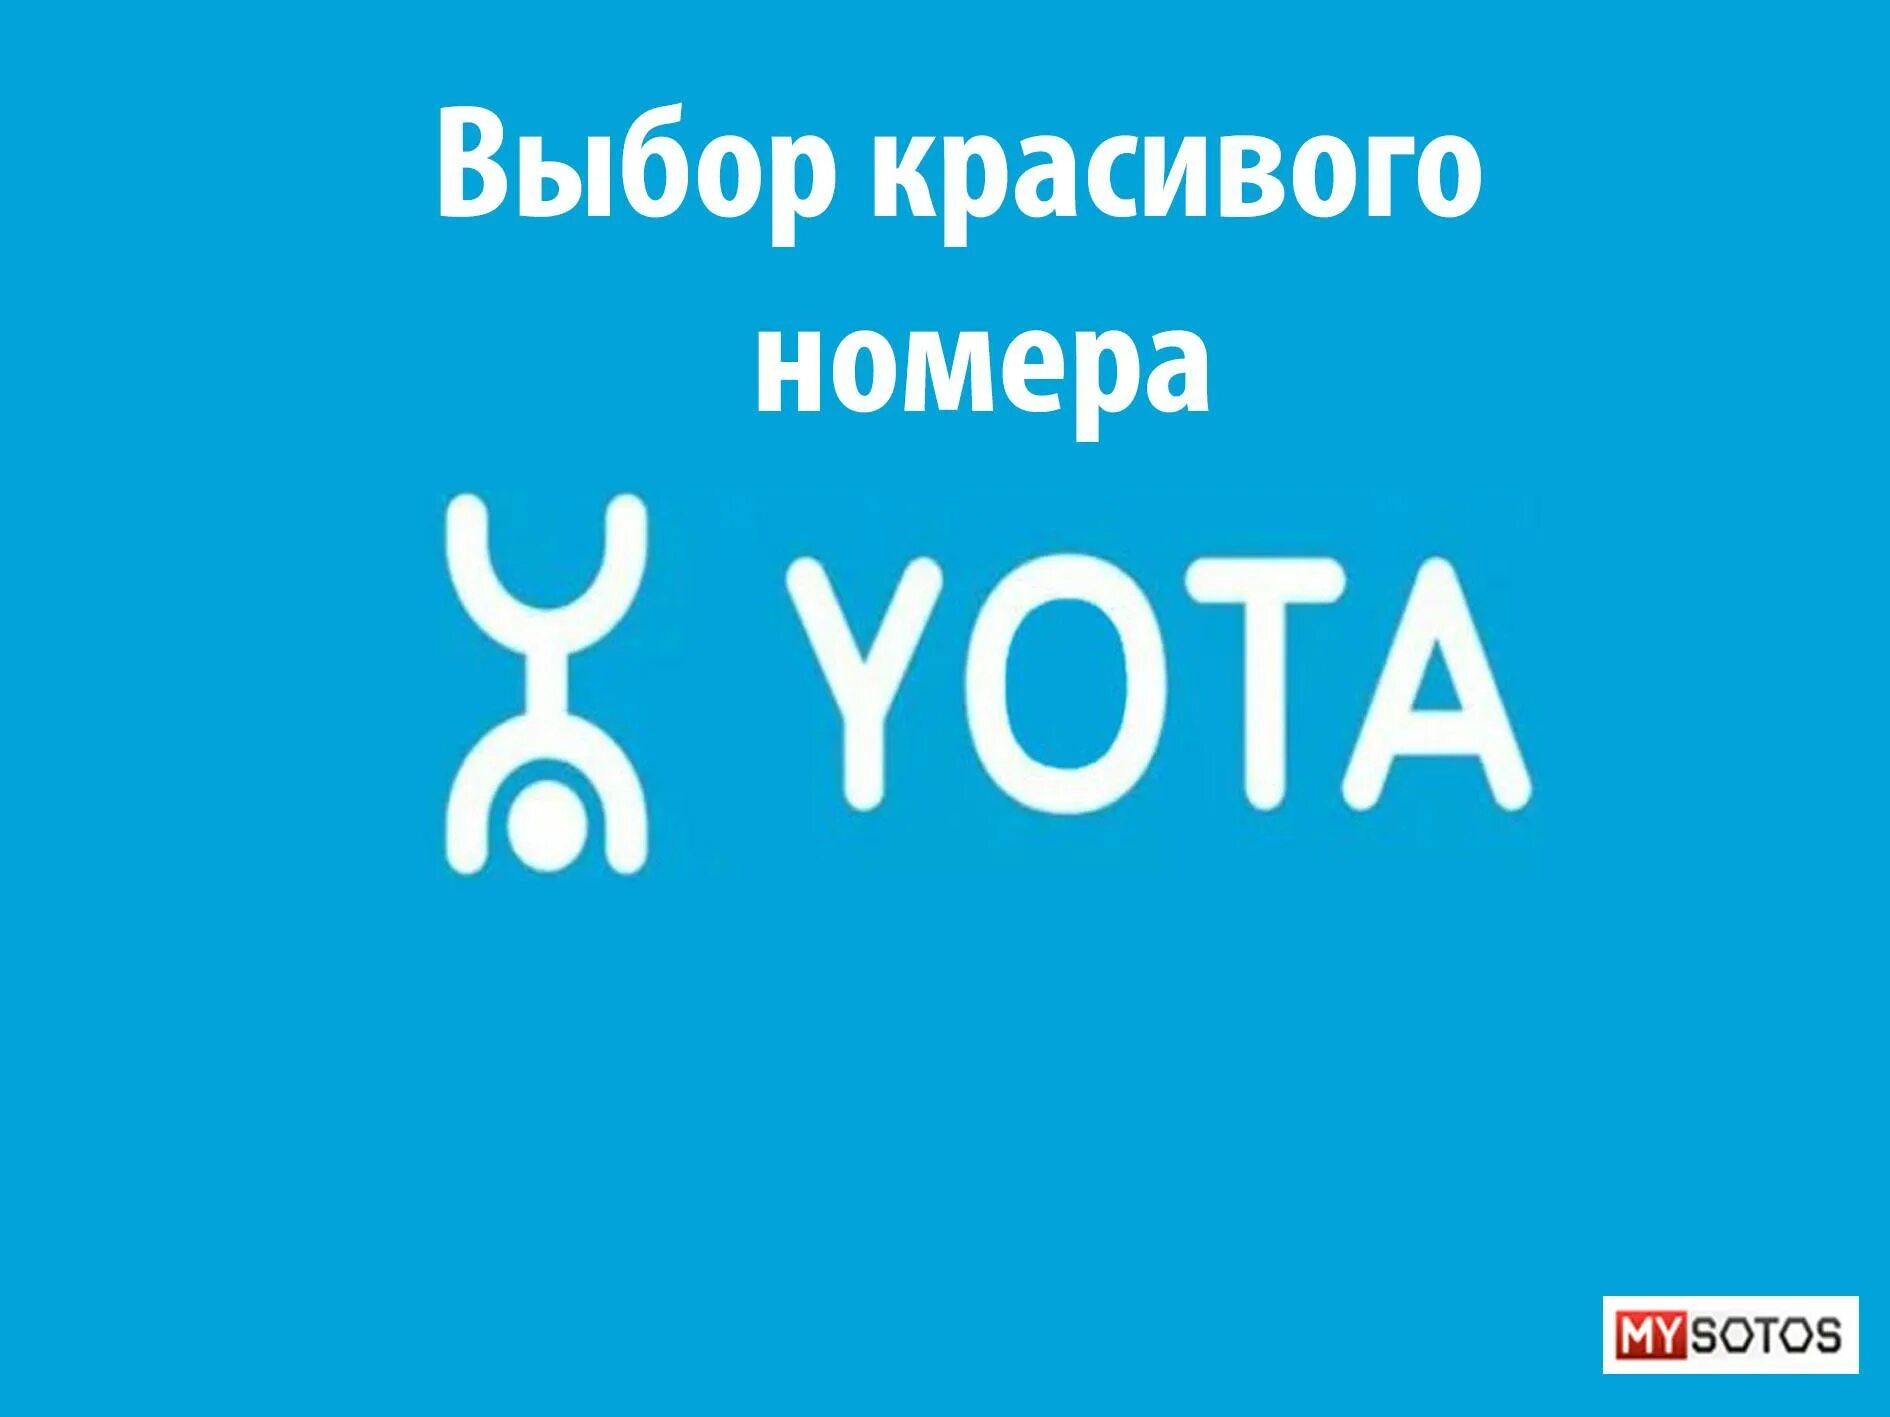 Yota телефон службы. Йота. Номера Yota. Красивые номера Yota. Yota логотип.